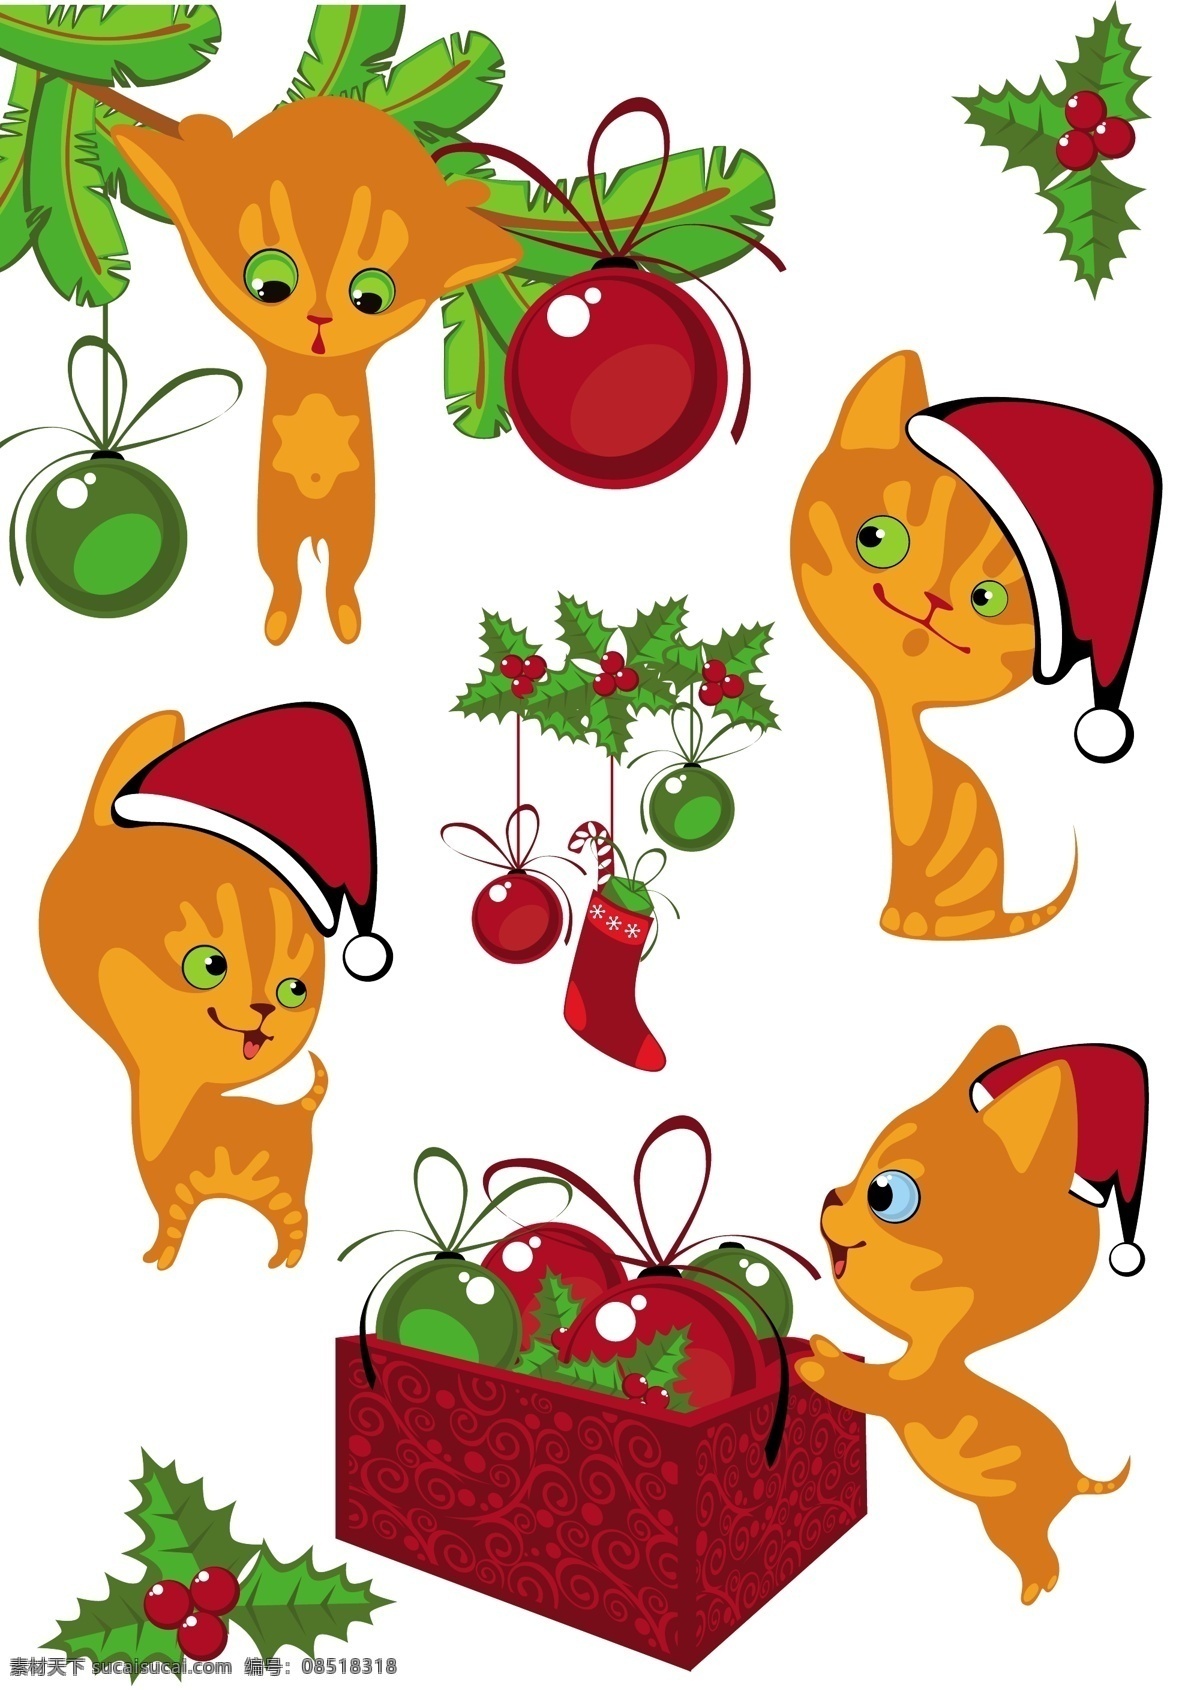 圣诞 装扮 卡通 宠物 猫 矢量 吊球 红果 绿叶 圣诞节卡通 圣诞帽 圣诞袜 圣诞装扮 卡通宠物猫 节日素材 其他节日